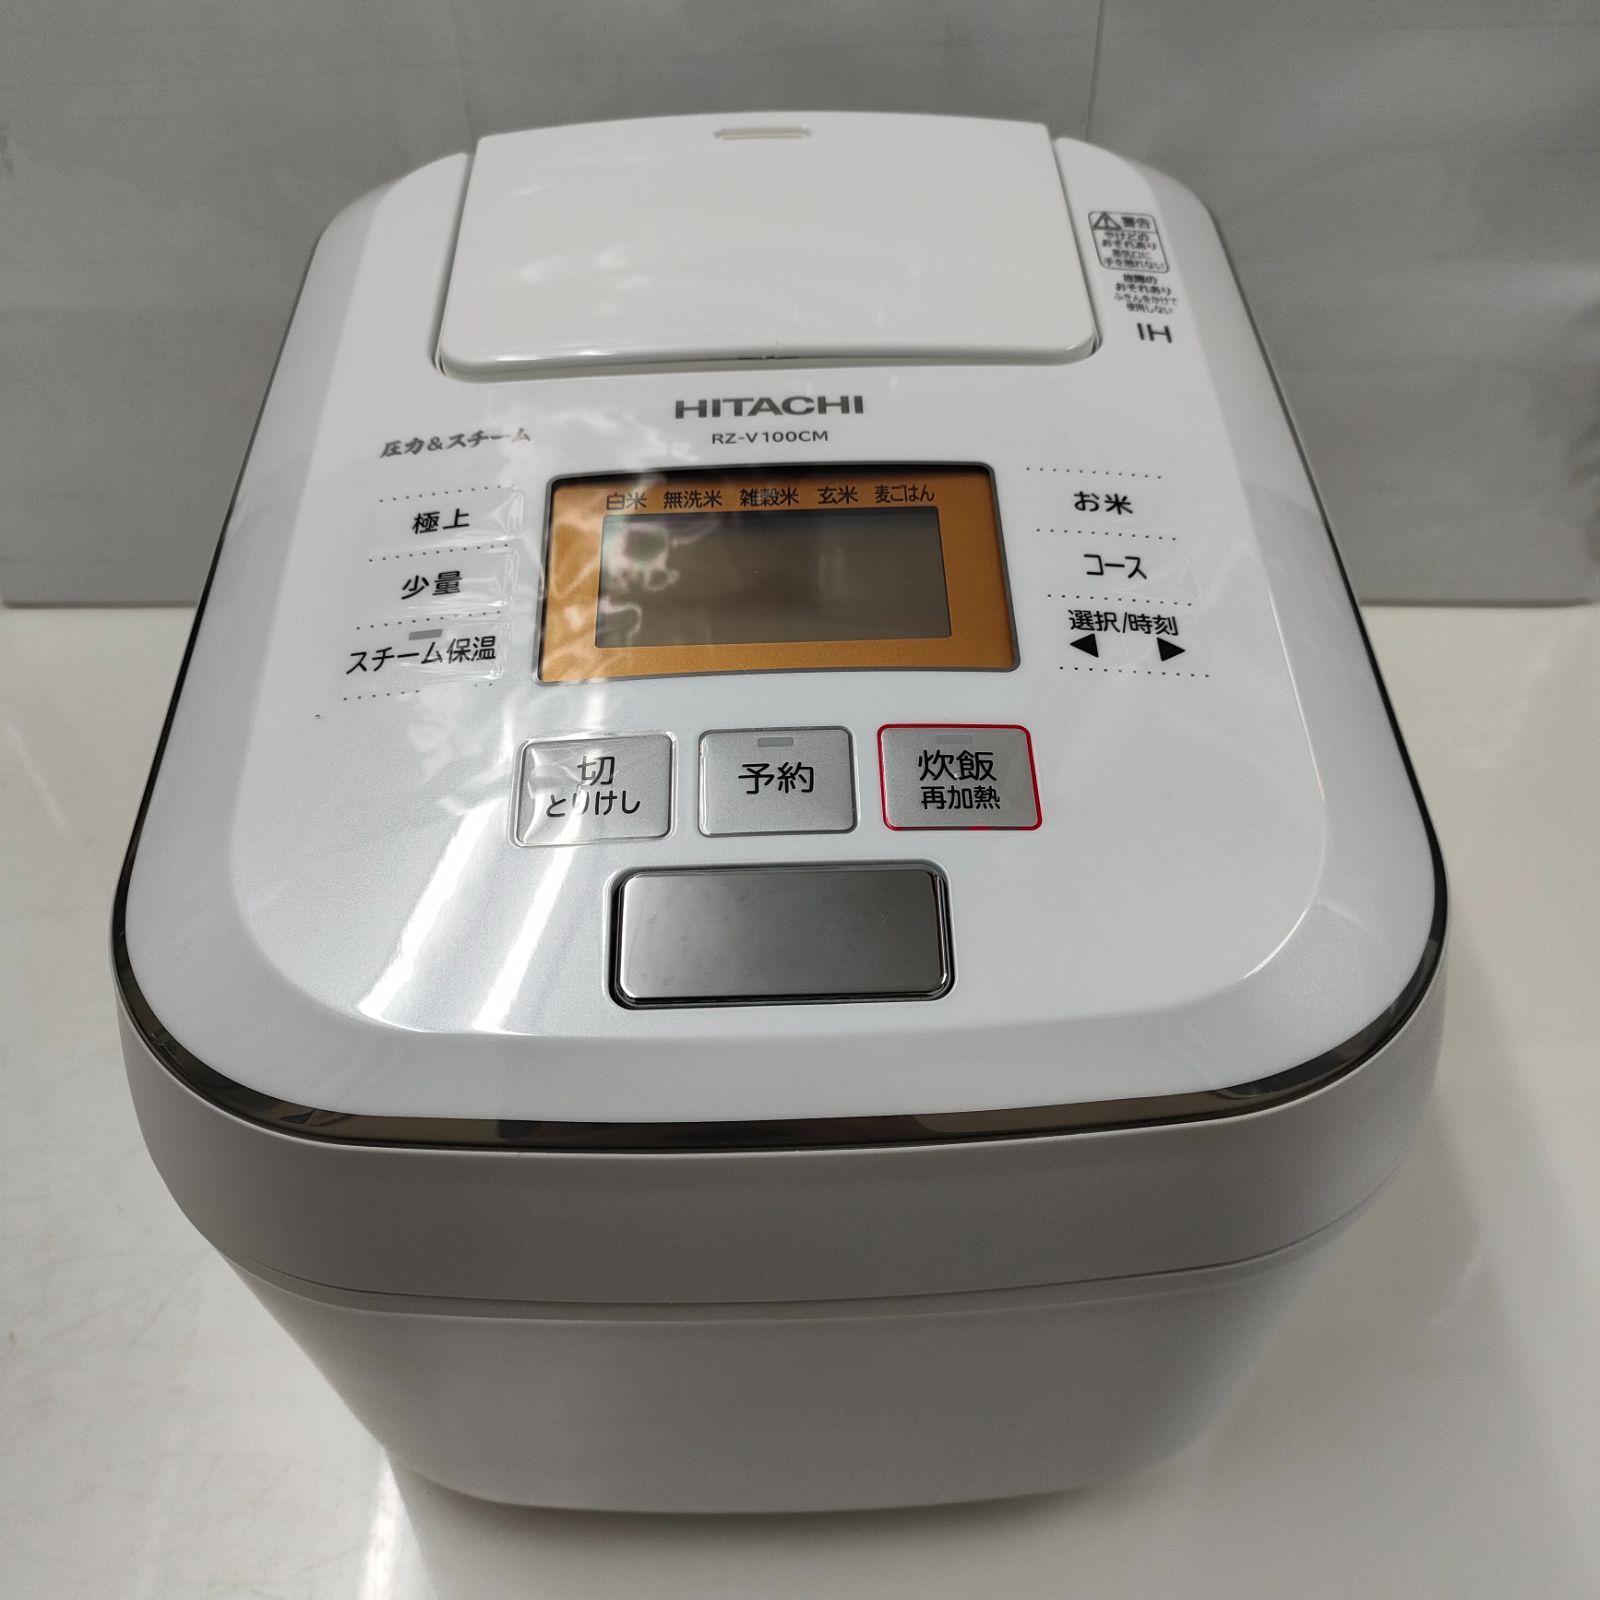 HITACHI 炊飯器 RZ-V100CM -2019 年製